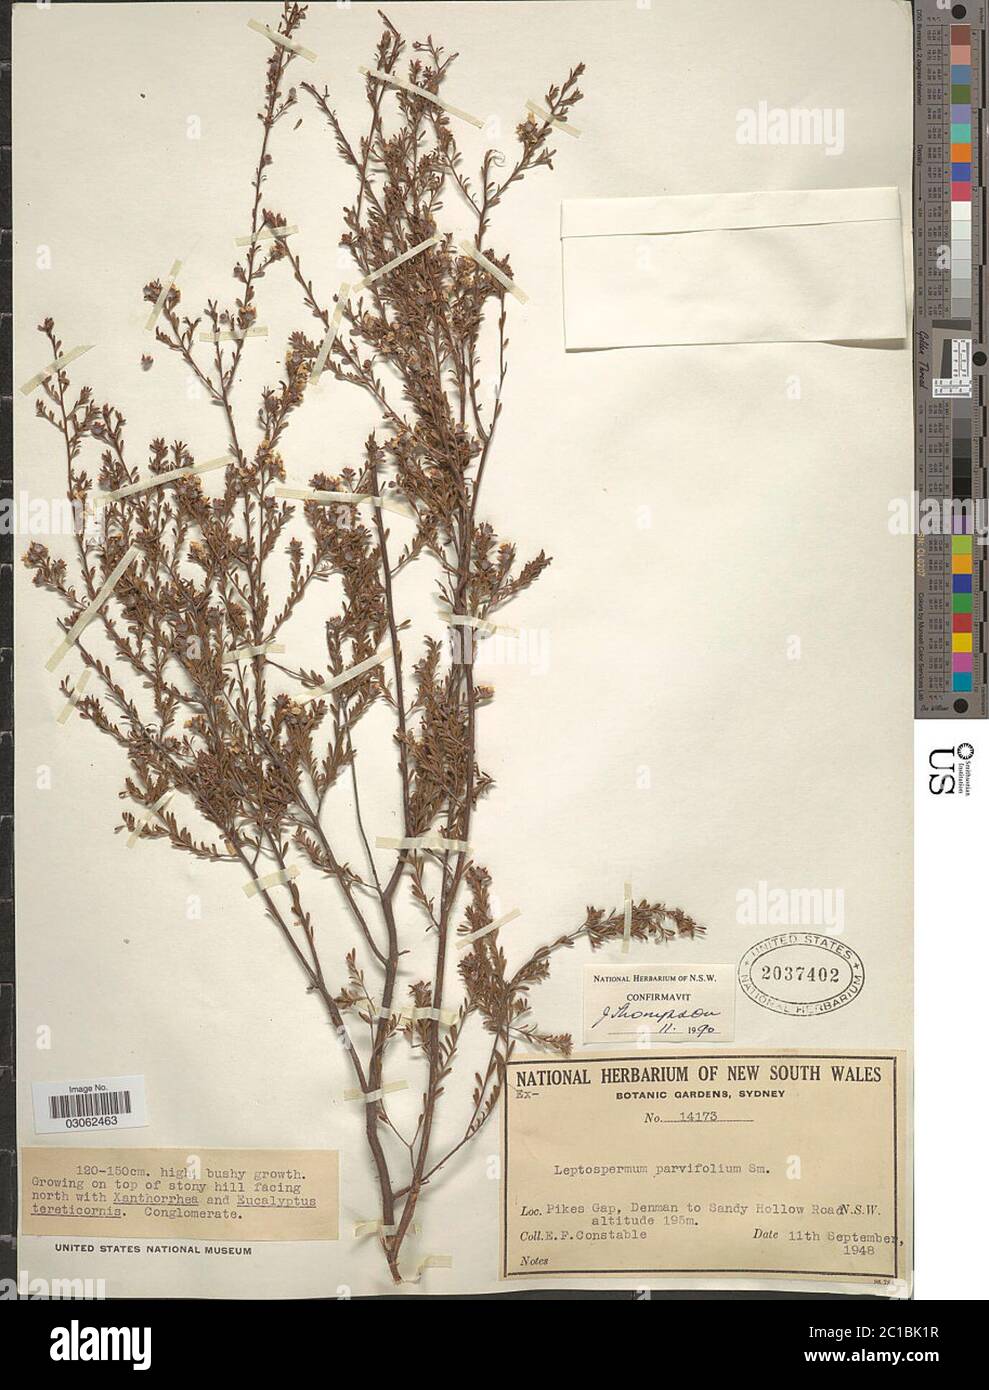 Leptospermum parvifolium Sm Leptospermum parvifolium Sm. Stock Photo